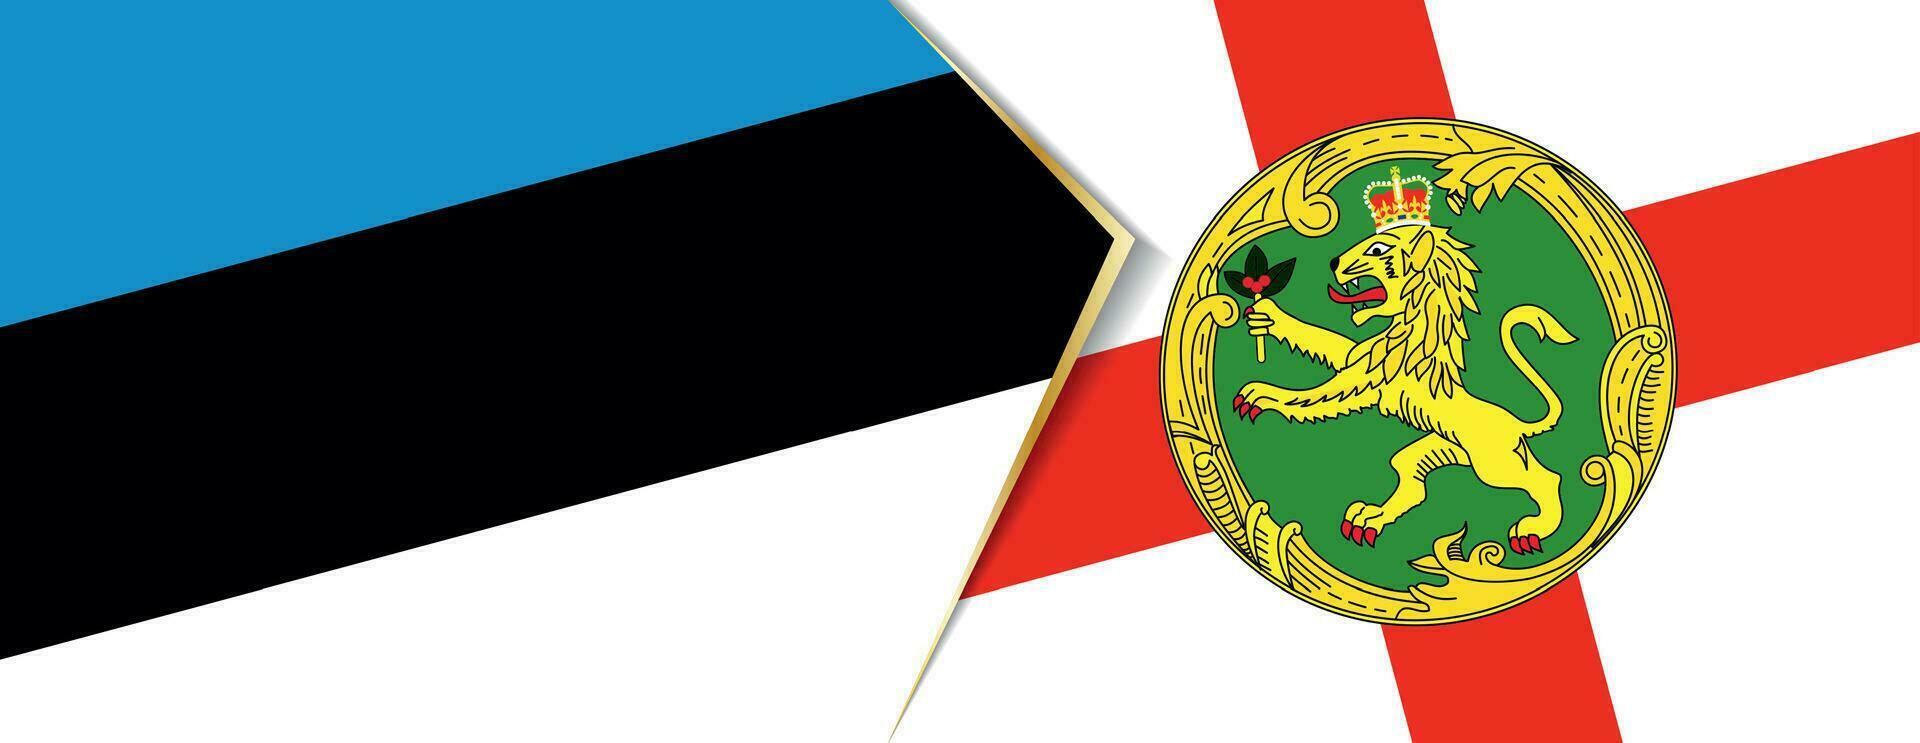 Estland und alderney Flaggen, zwei Vektor Flaggen.